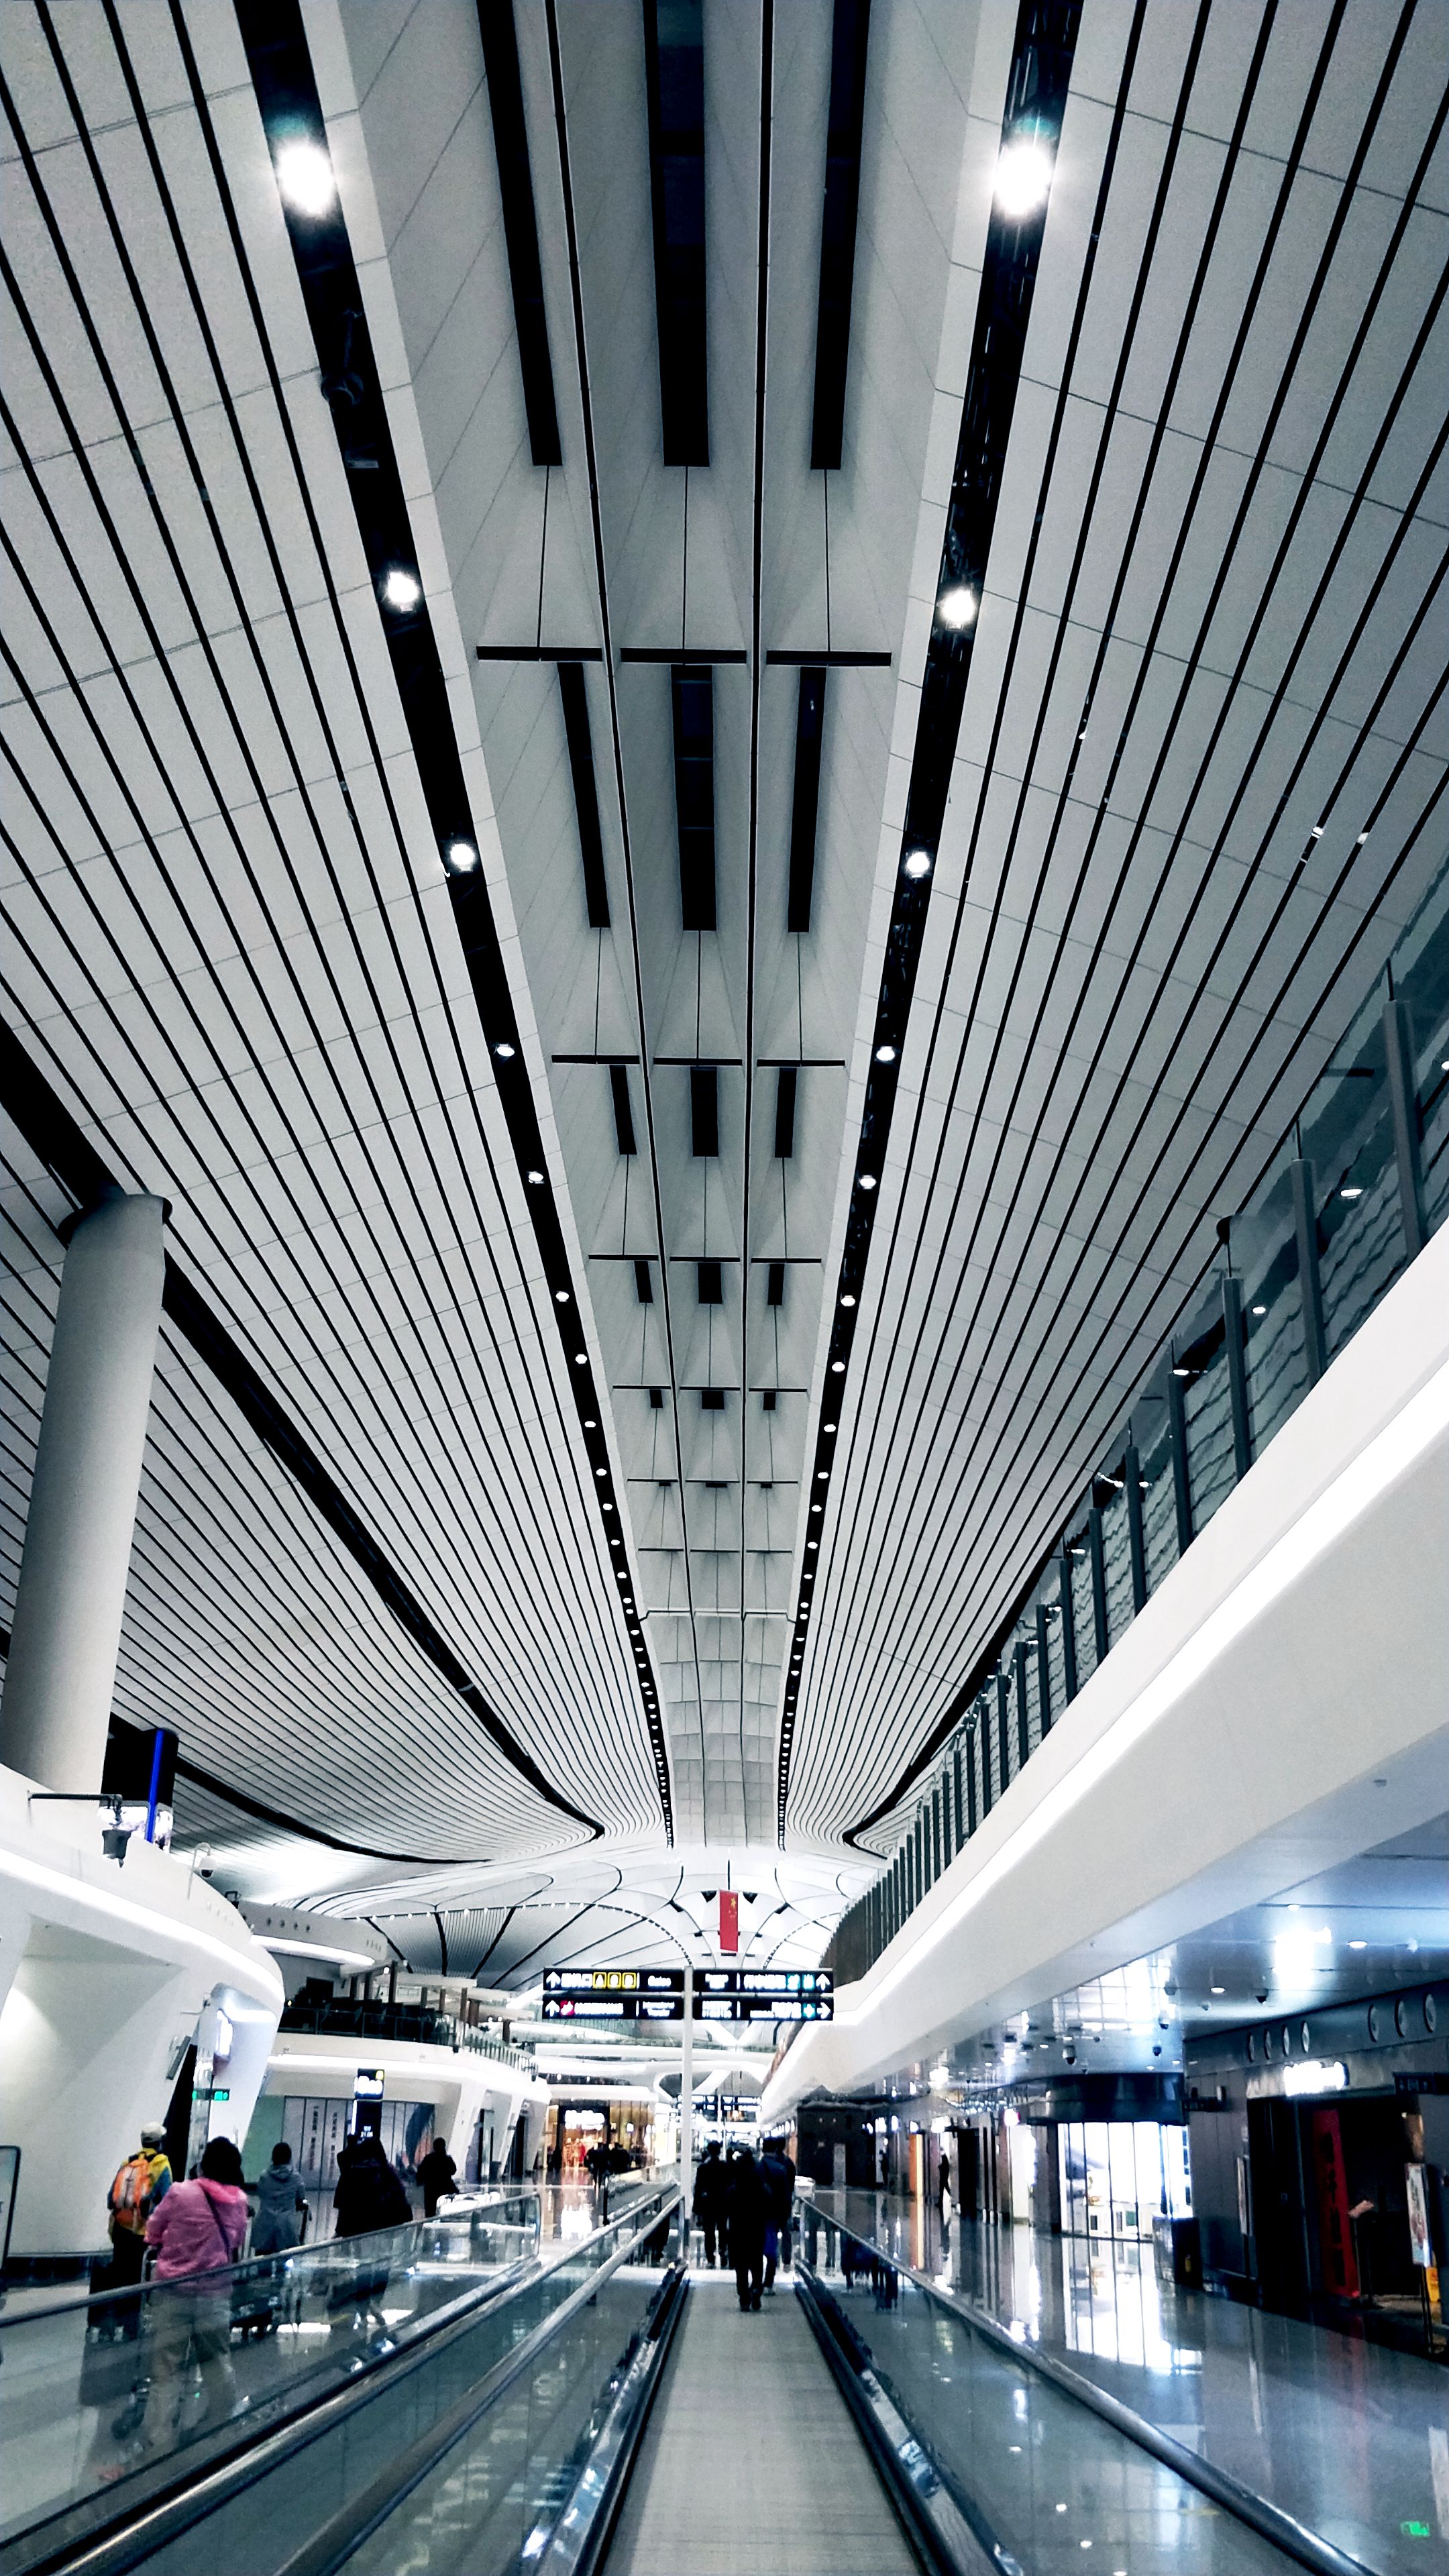 但机场候机大厅内的建筑也非常壮美,处处体现了建筑线条美学的设计